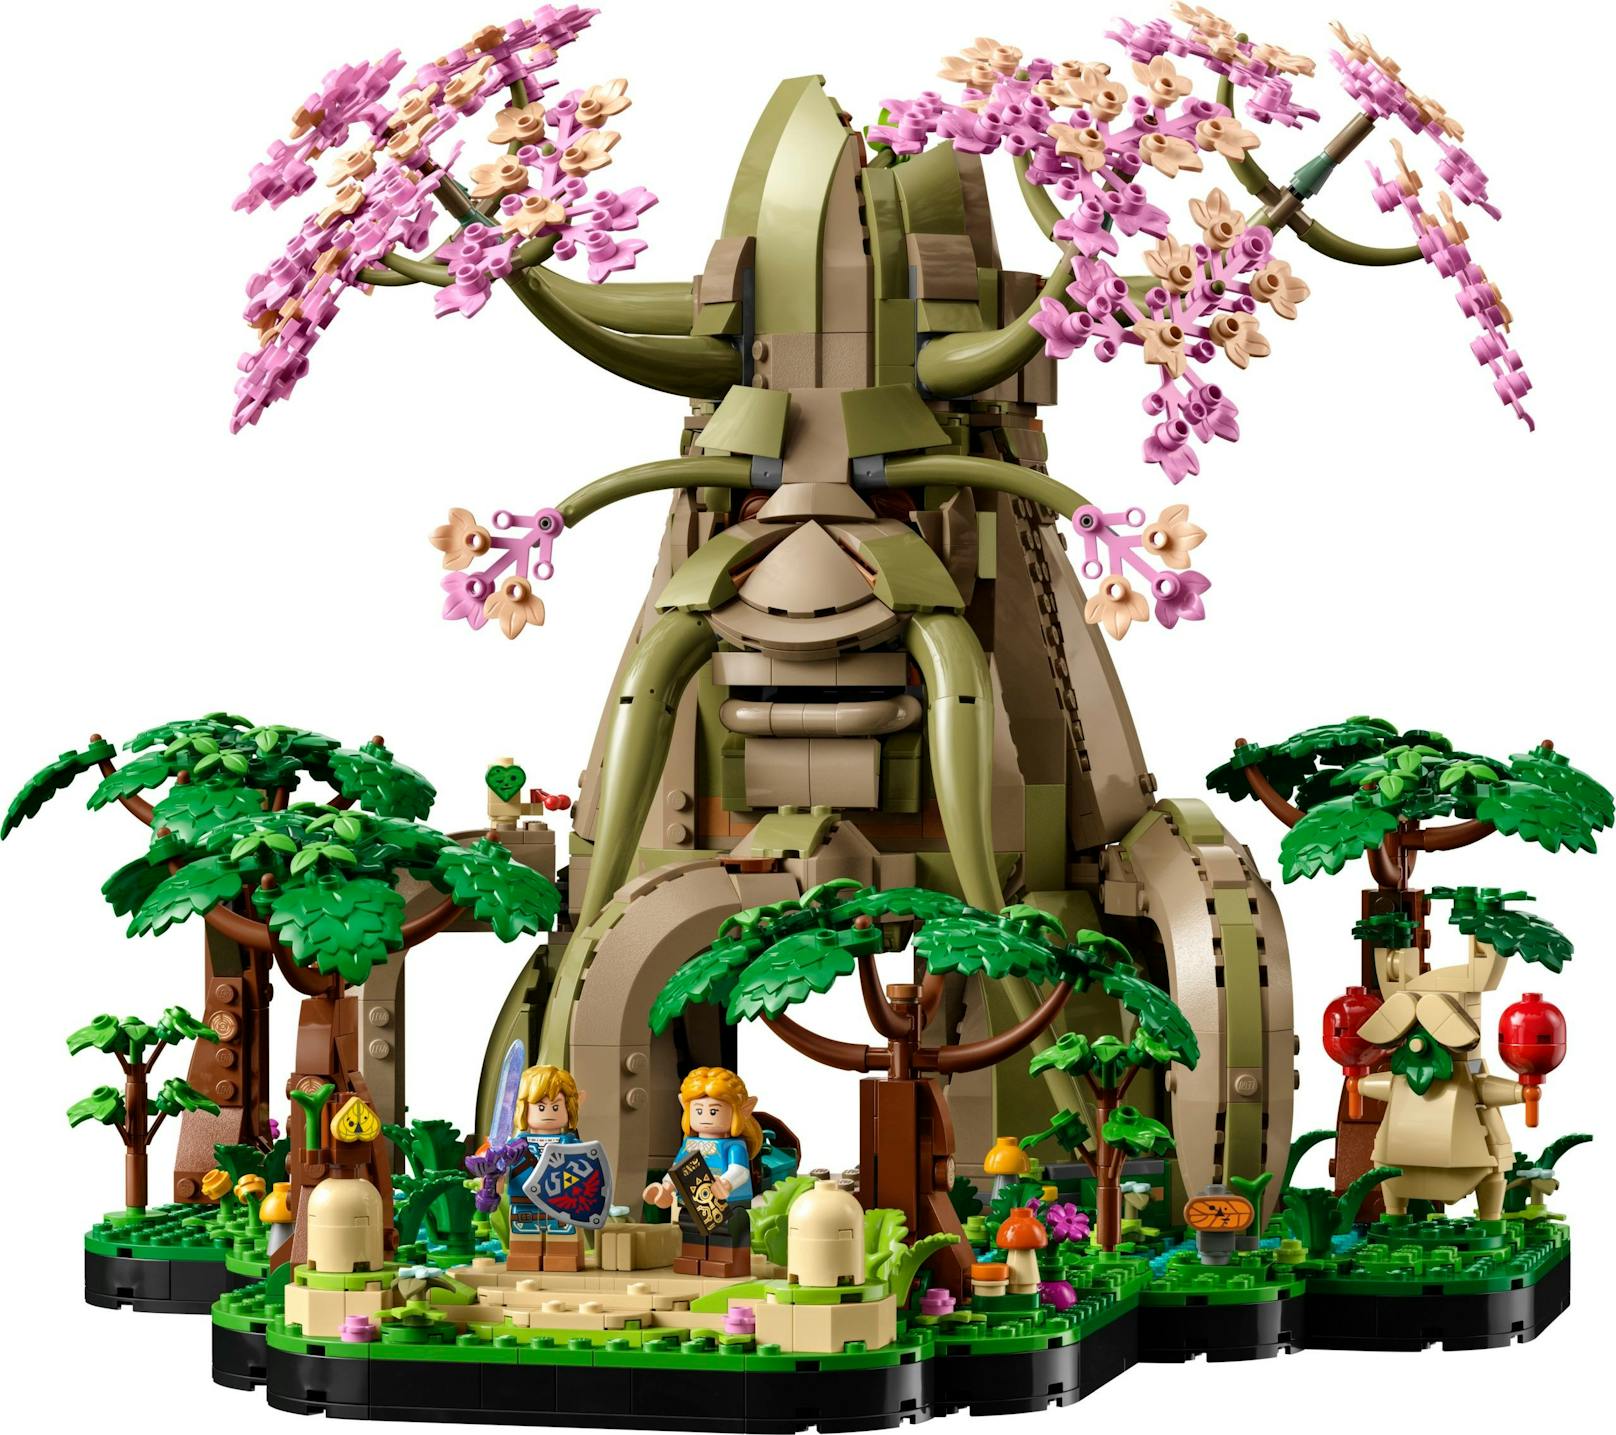 ... aus "Breath of the Wild" und Links Haus aus "Ocarina of Time". Je nach gewählter Version lassen sich Sockel und Haus auch als kleineres Modell bauen.